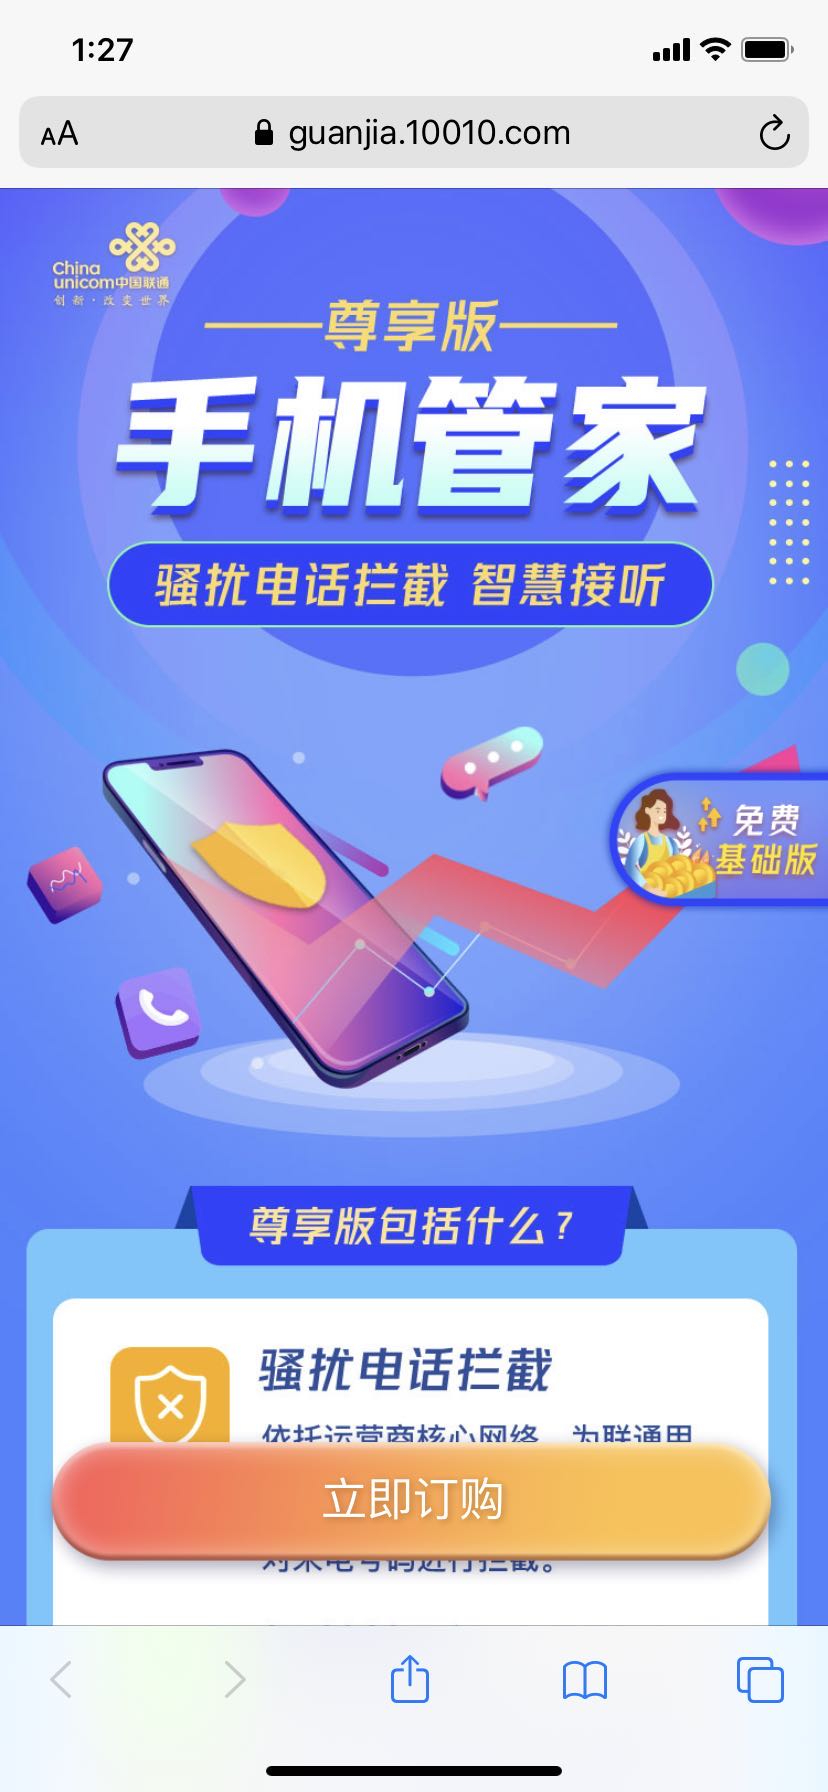 中国联通骚扰拦截业务手机管家开通方法，2020最新免费版